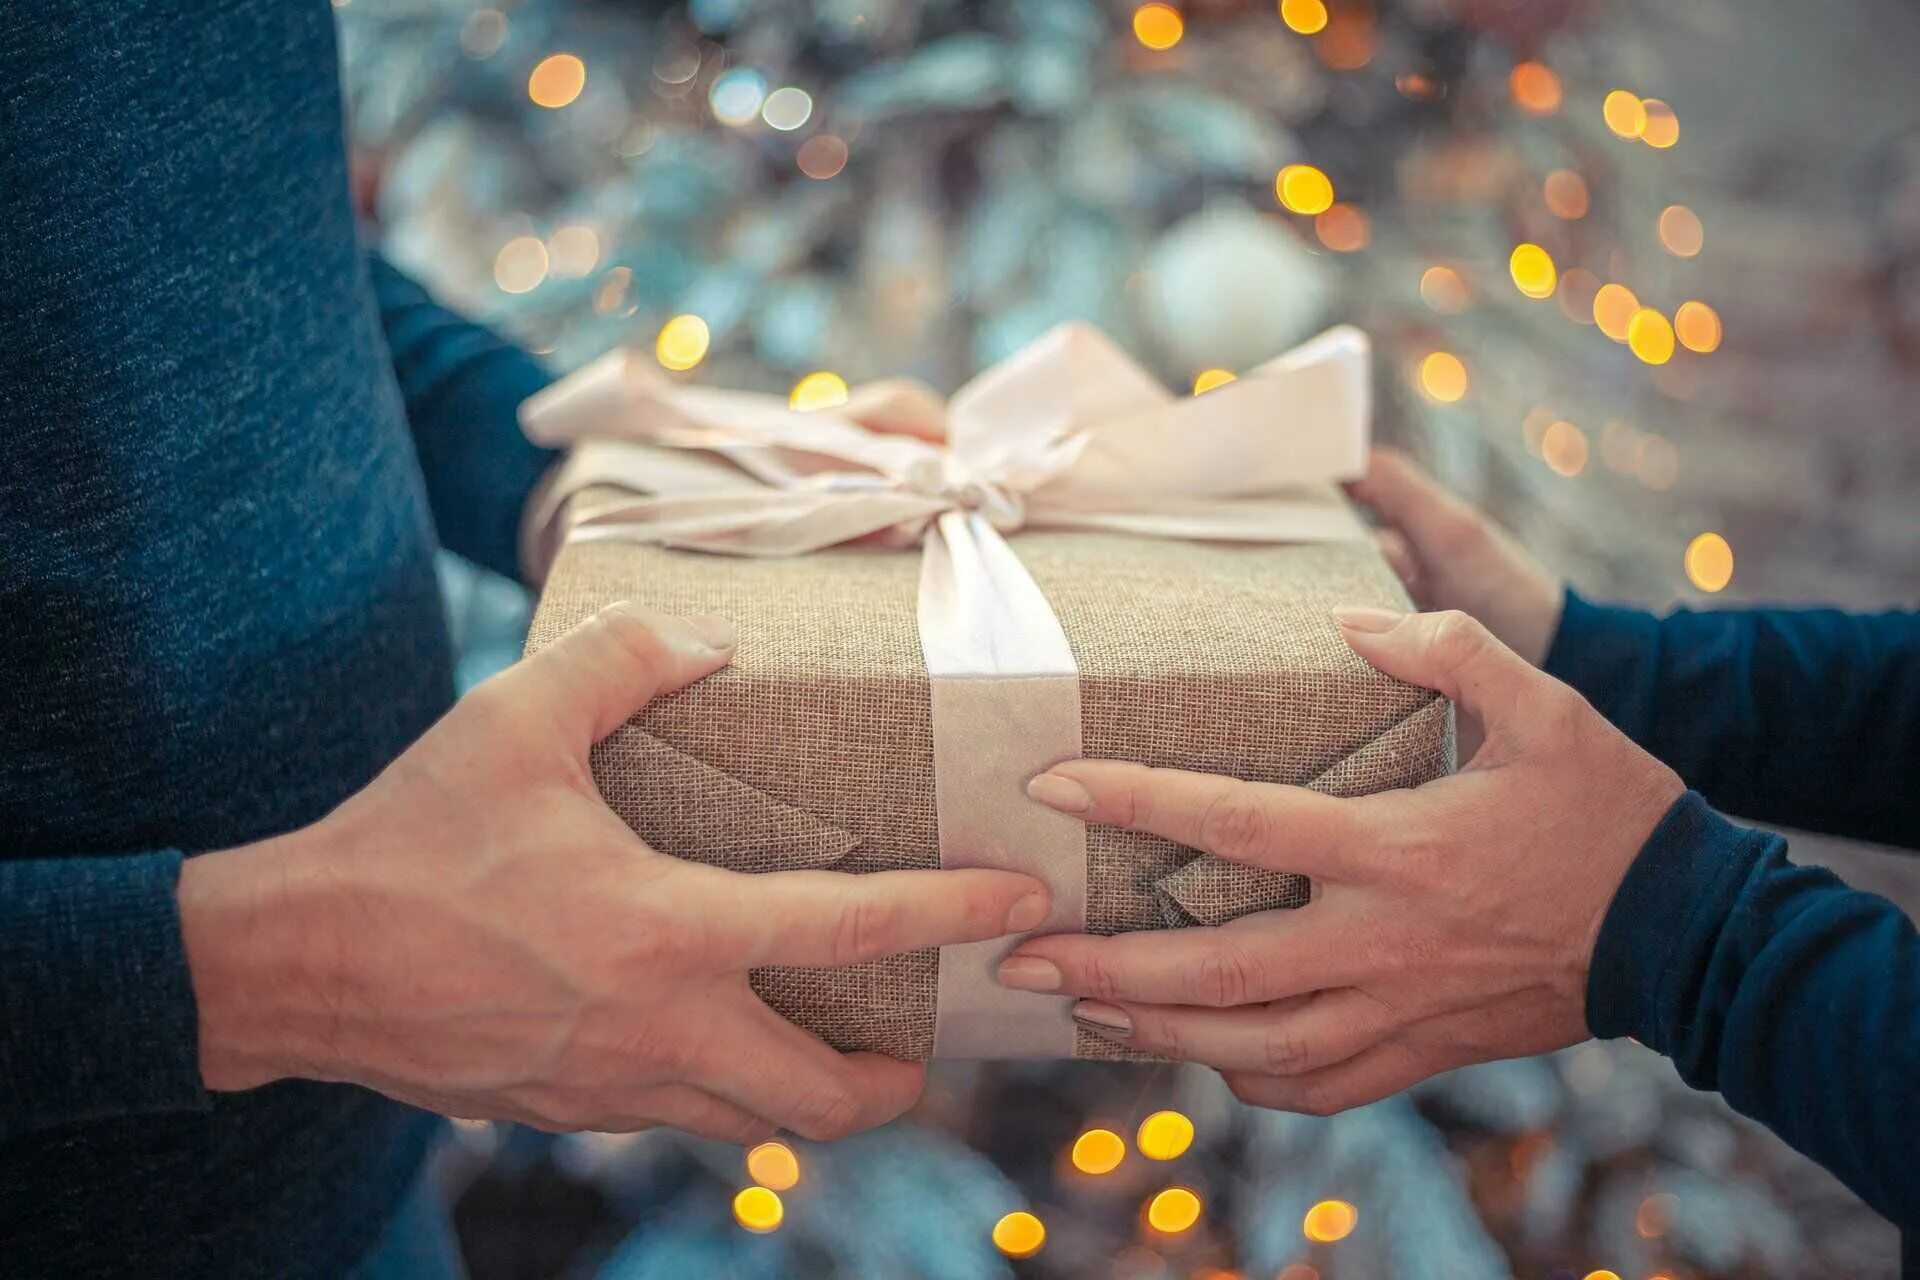 Подарок в руках. Дарим подарки. Подорки в руках. Человек дарит подарок другому. Дарить или получать подарки